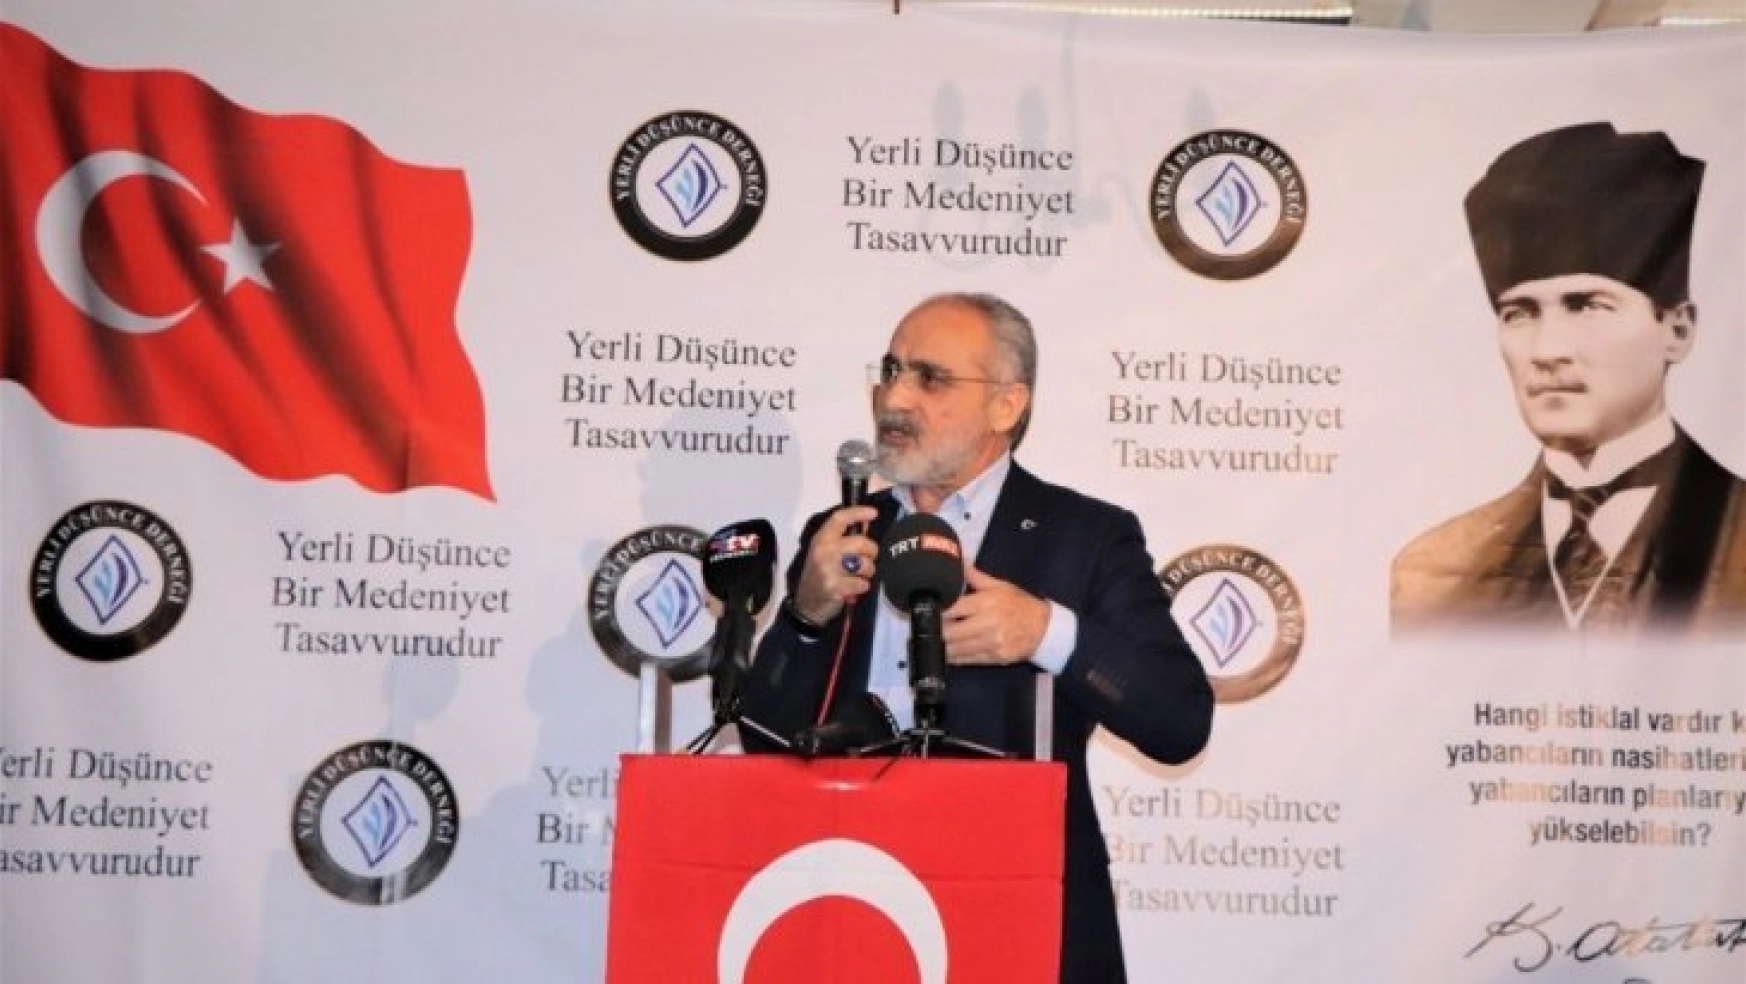 Yalçın Topçu: 'Türkiye Cumhuriyeti  devlet olmanın gereğini hukuk içerisinde yapar'